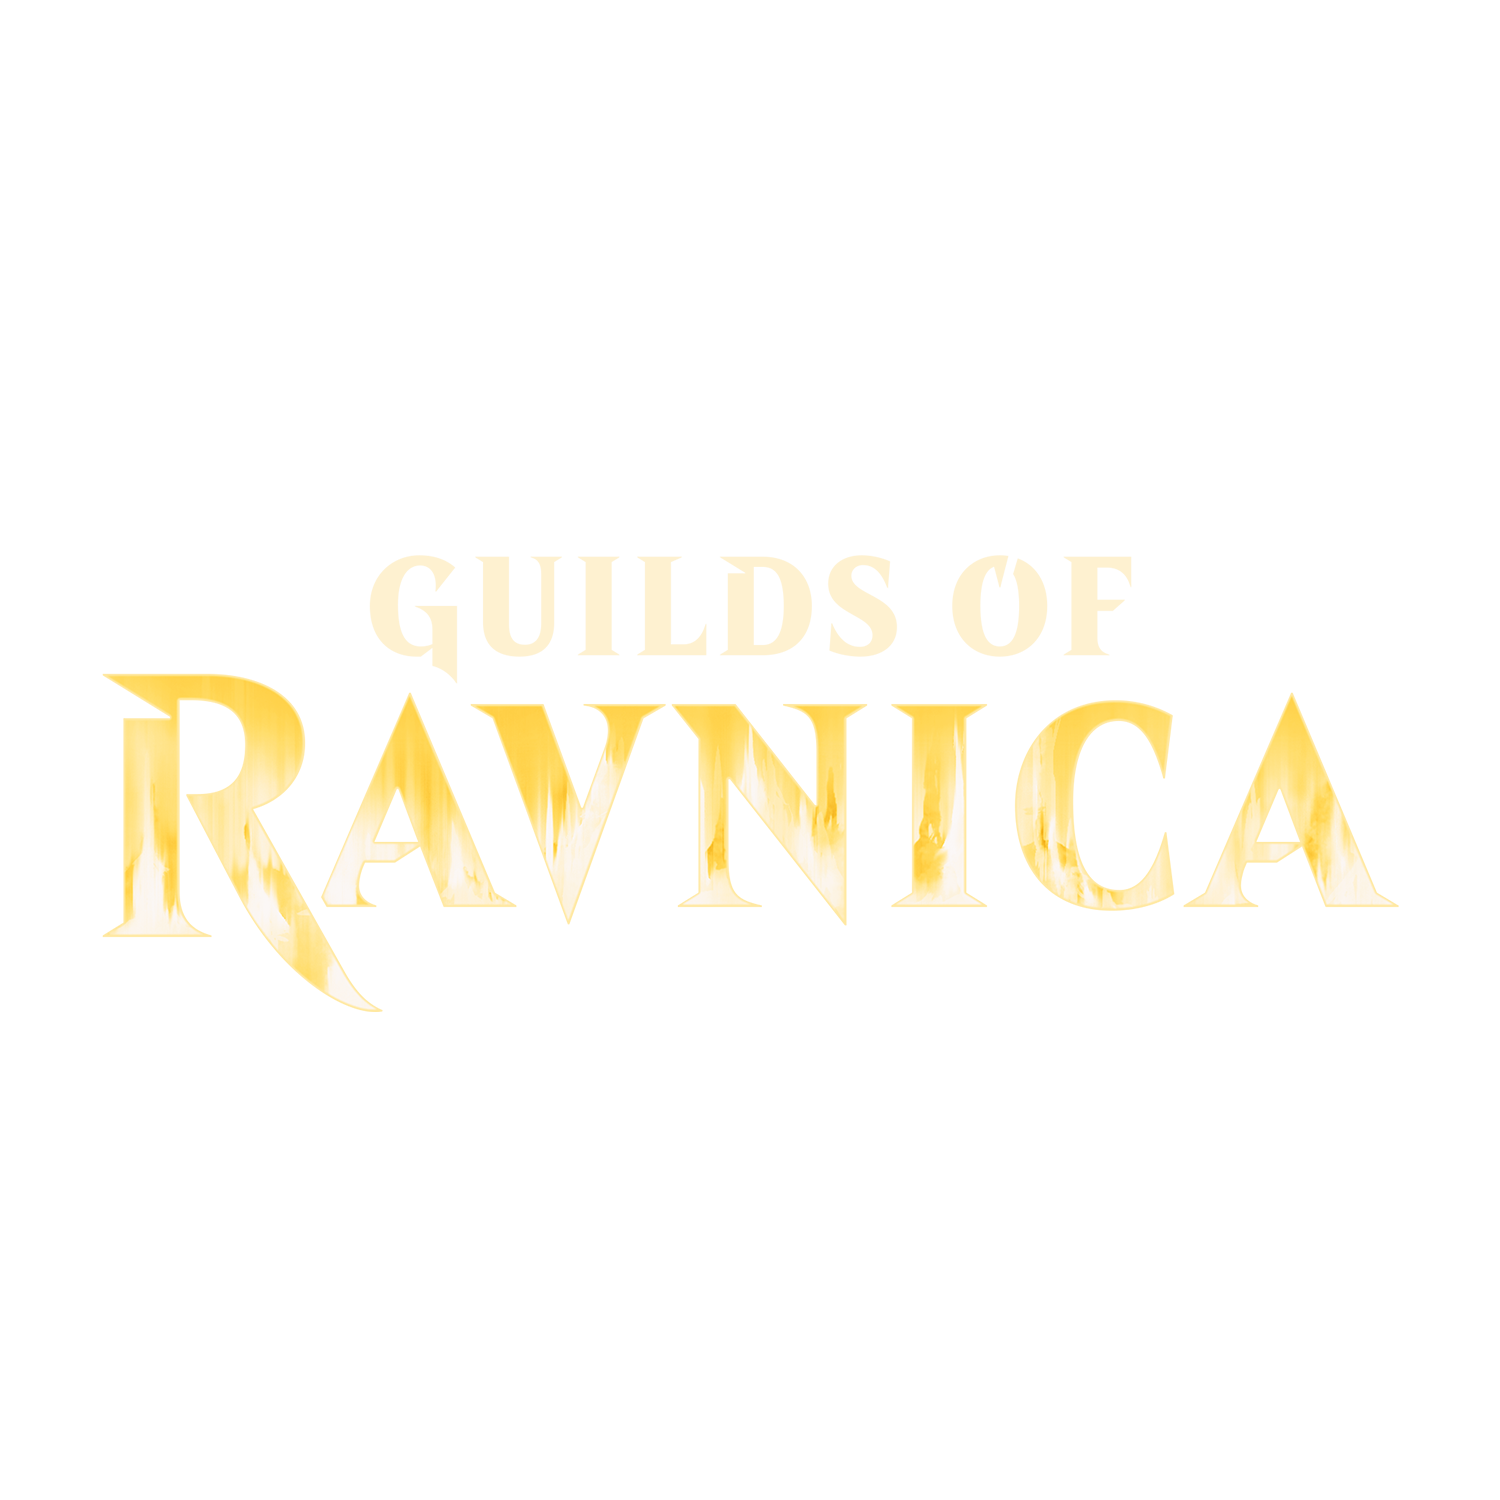 Prerelease Guilds of Ravnica - Regular